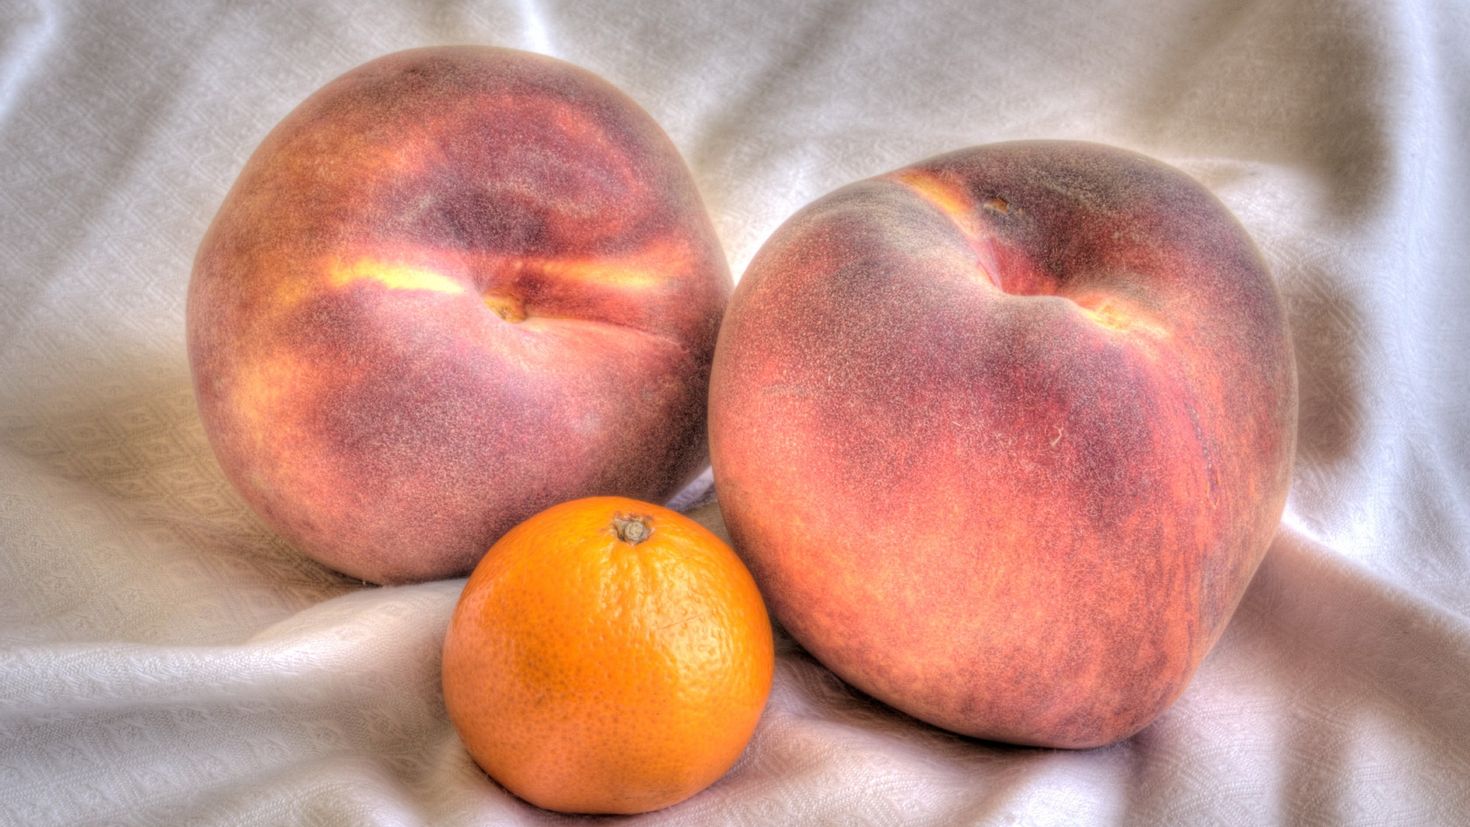 2 10 всех фруктов составляют персики. Персик нектарин абрикос. Нектарин мандарин. Фрукты персики мандарины. Абрикос хурма персик.